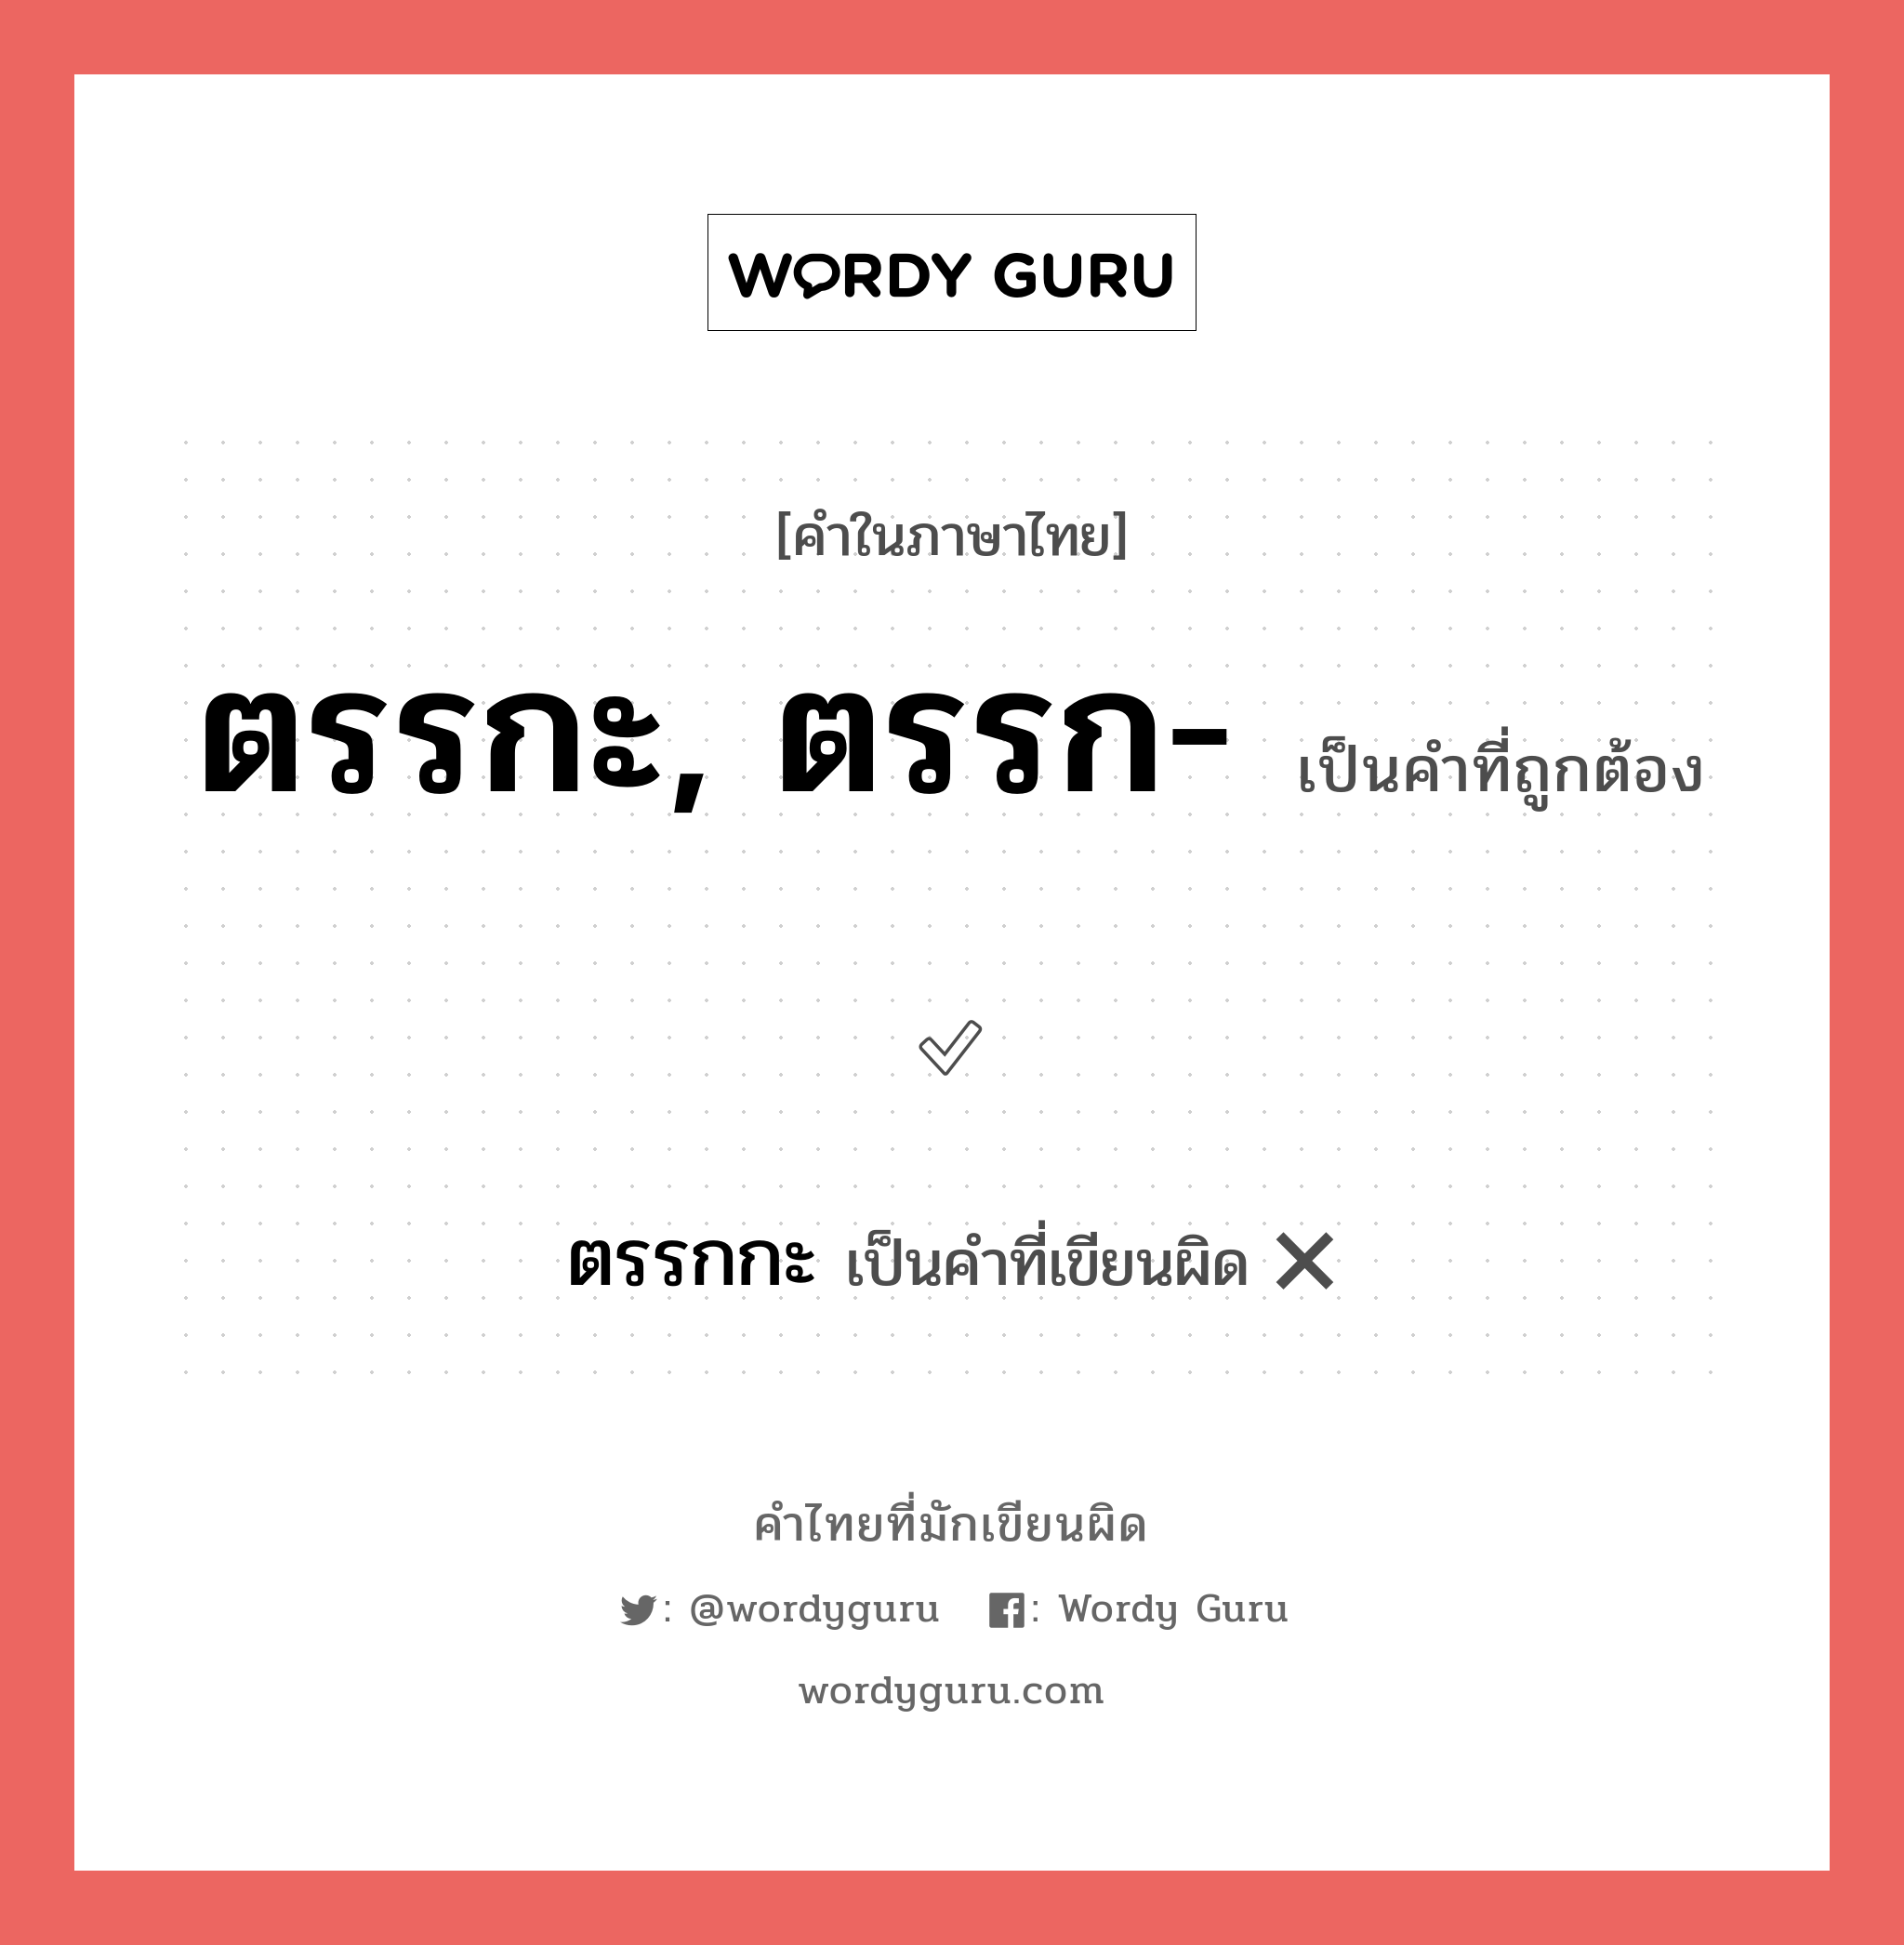 ตรรกะ, ตรรก- หรือ ตรรกกะ คำไหนเขียนถูก?, คำในภาษาไทยที่มักเขียนผิด ตรรกะ, ตรรก- คำที่ผิด ❌ ตรรกกะ